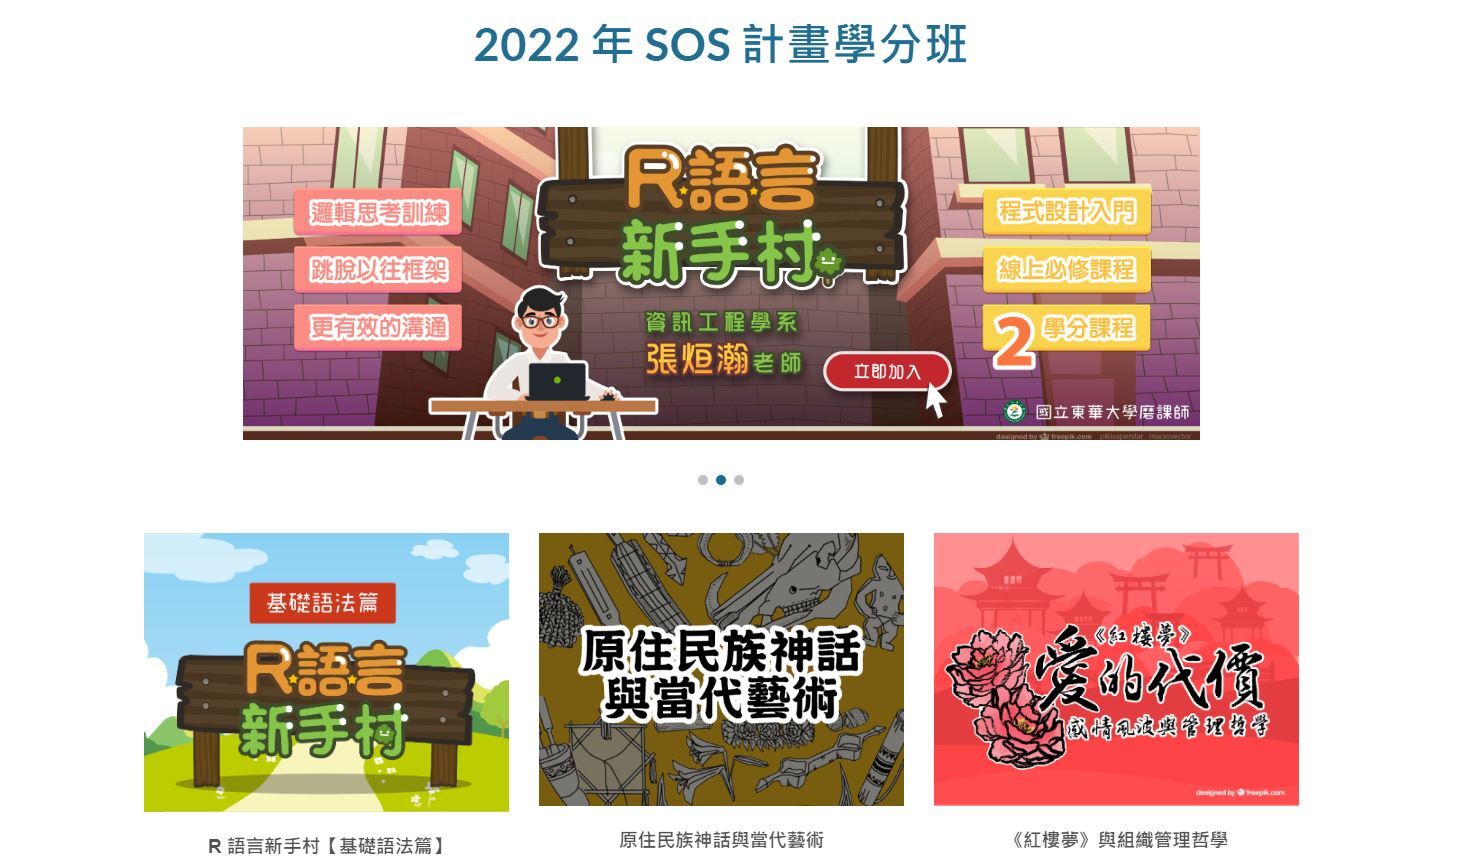 東華大學2022-SOS計畫學分班網站截圖